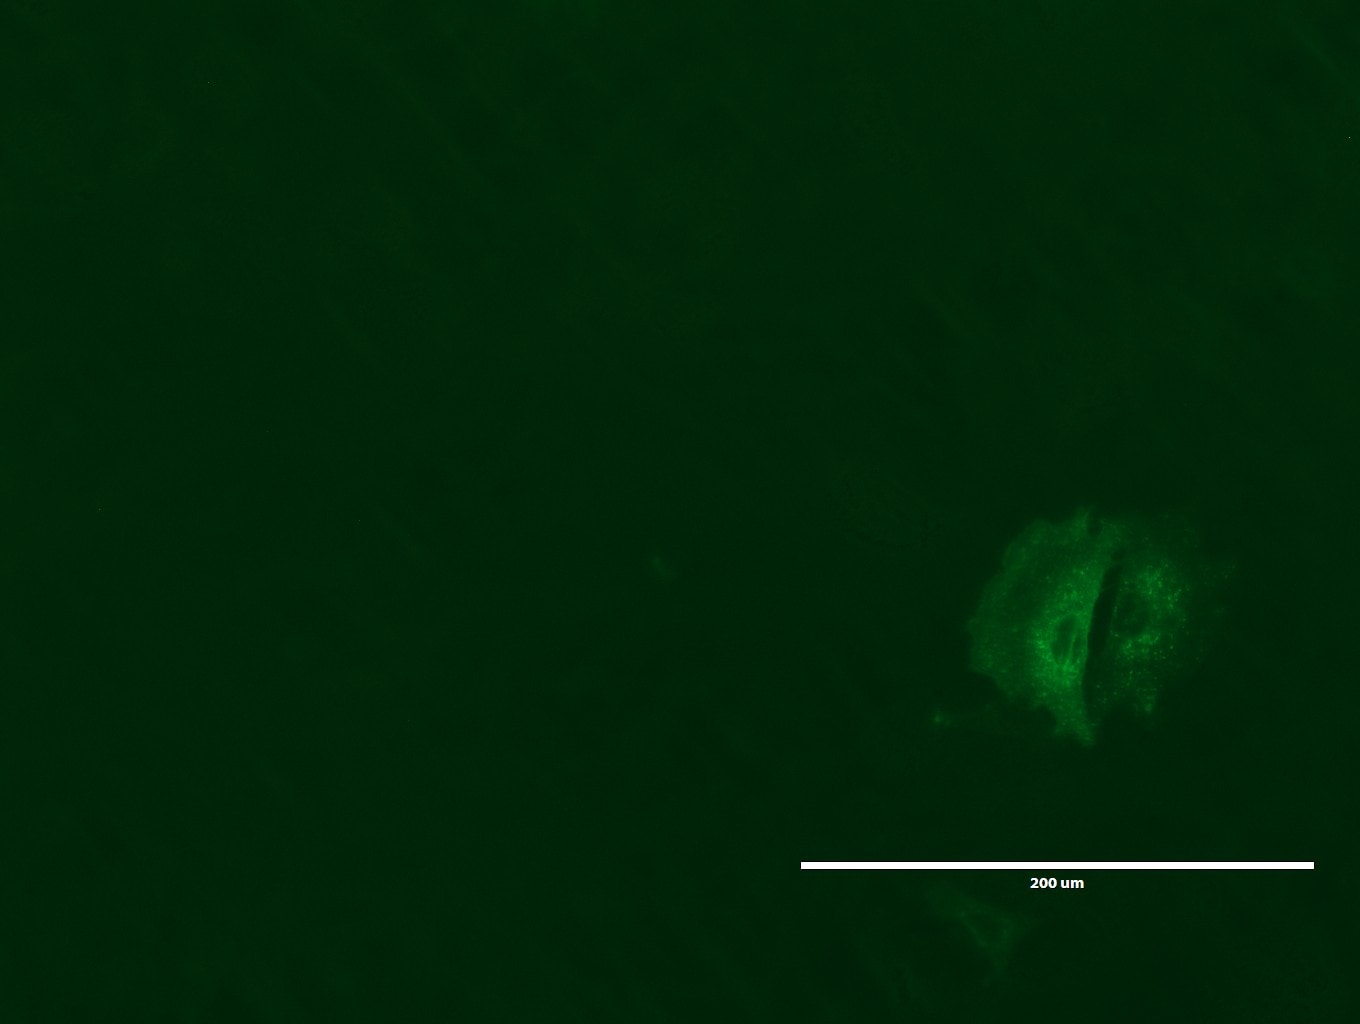 lgr5 antibody immunofluorescence